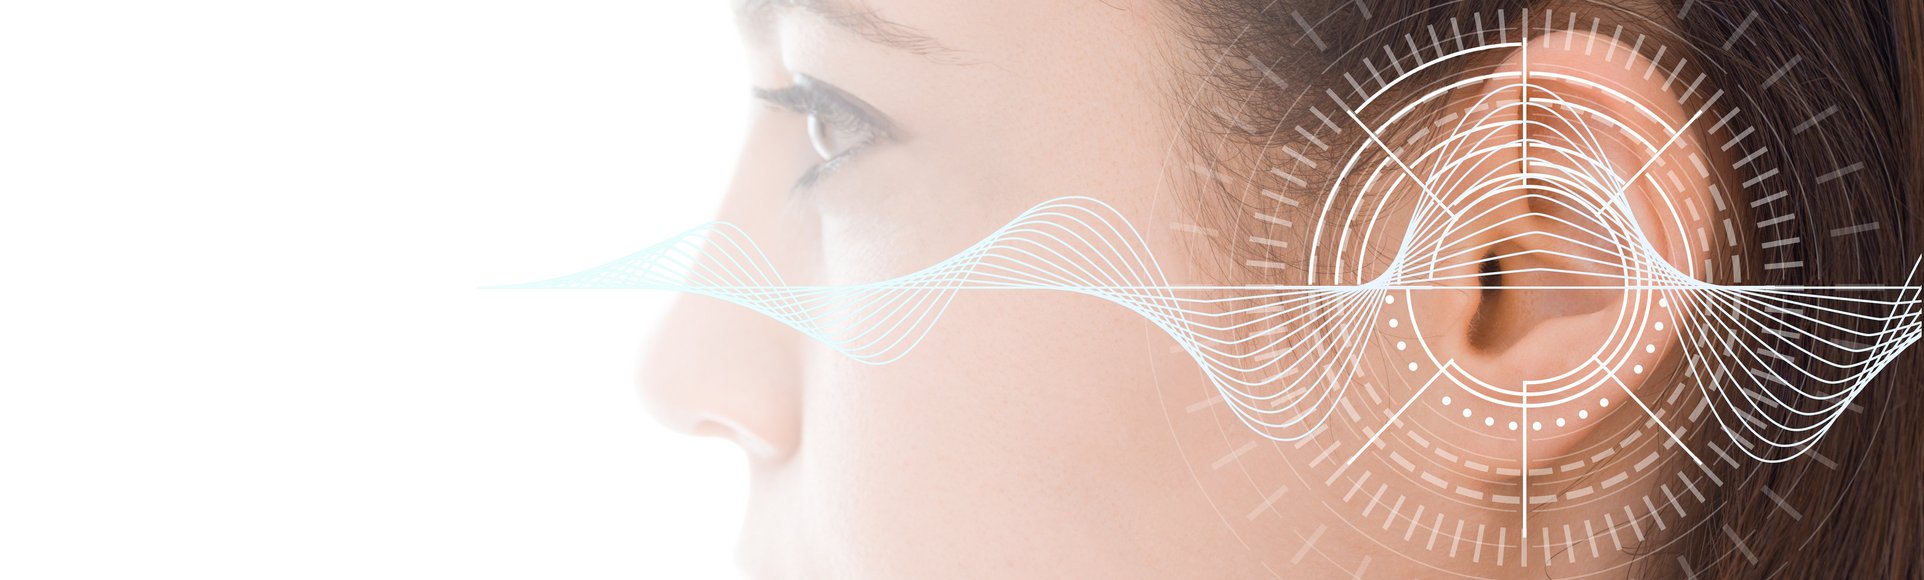 Ein Cochlea-Implantat ermöglicht Menschen mit hochgradigem Hörverlust oder Gehörlosigkeit das Hören.